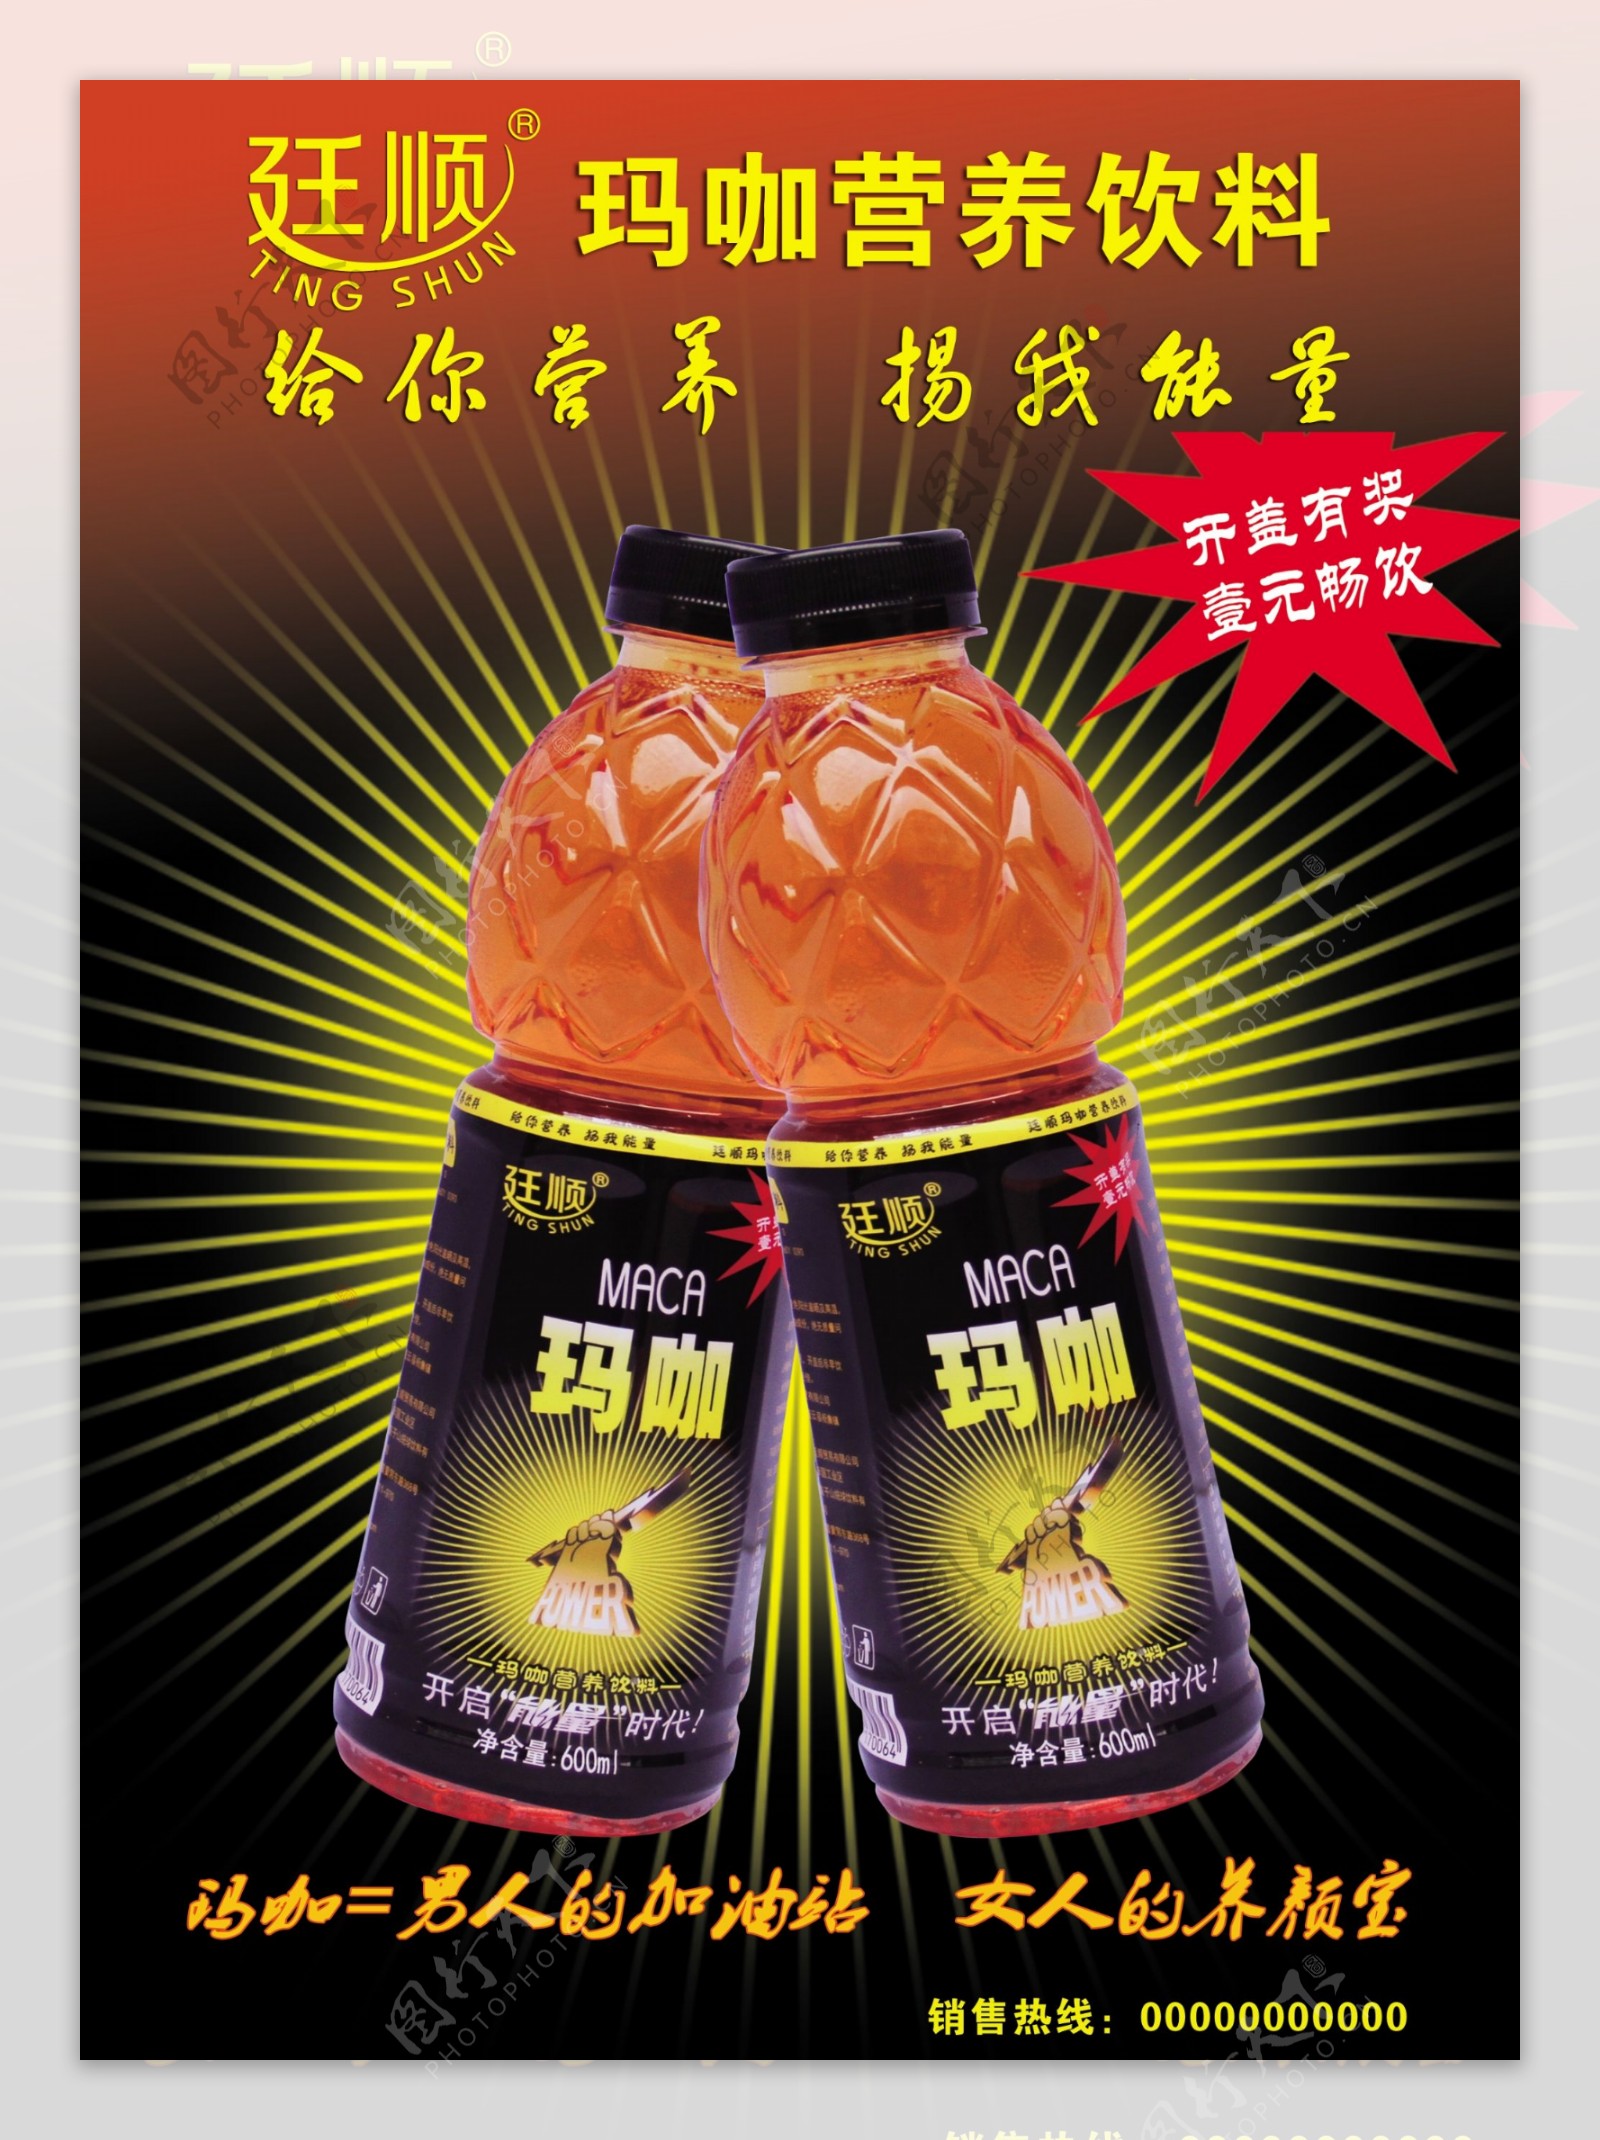 廷顺玛咖营养饮料宣传海报